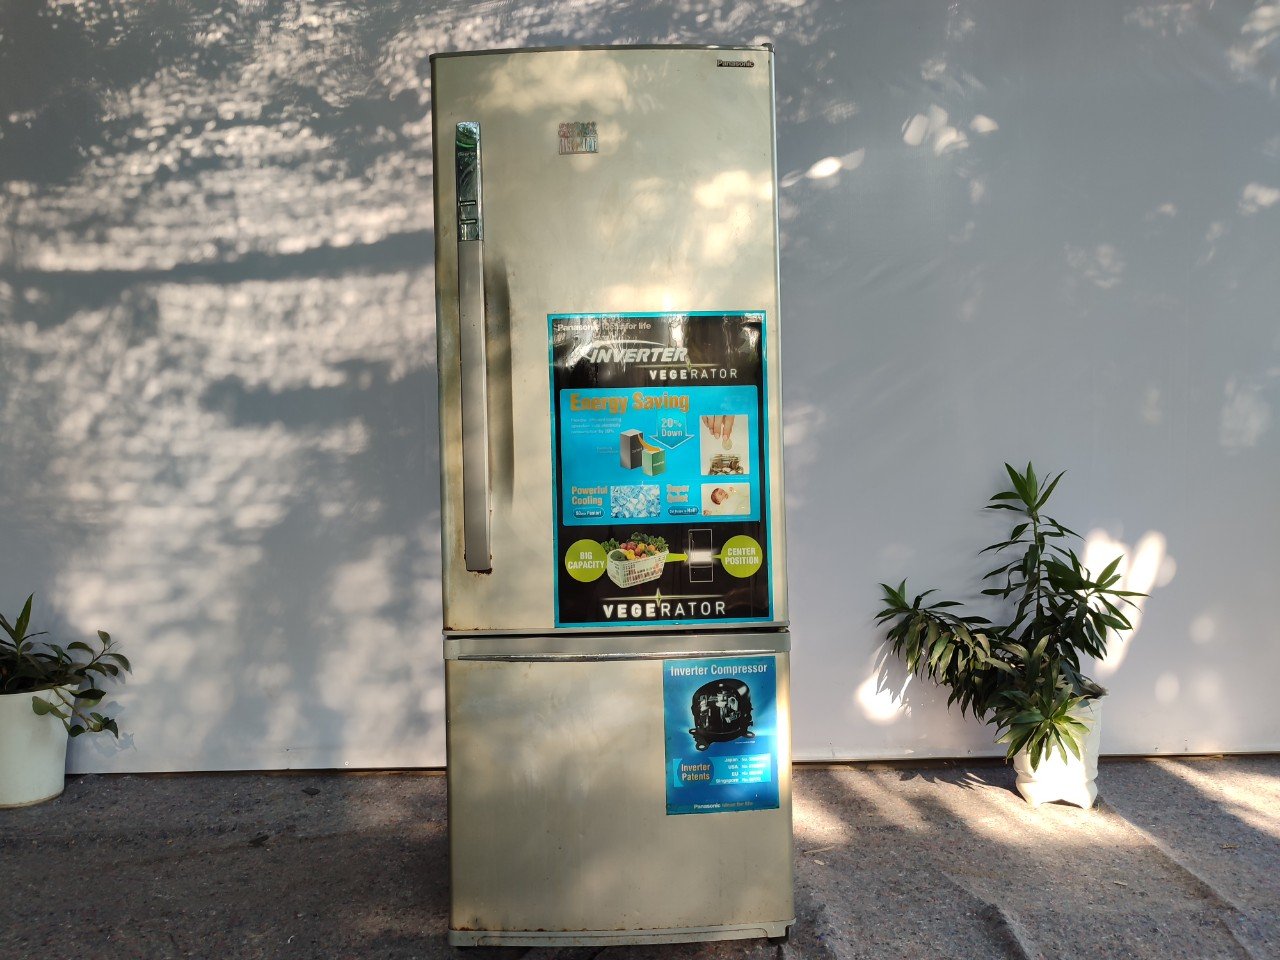 Tủ lạnh Panasonic NR -B403V inverter 395 l - SP020291